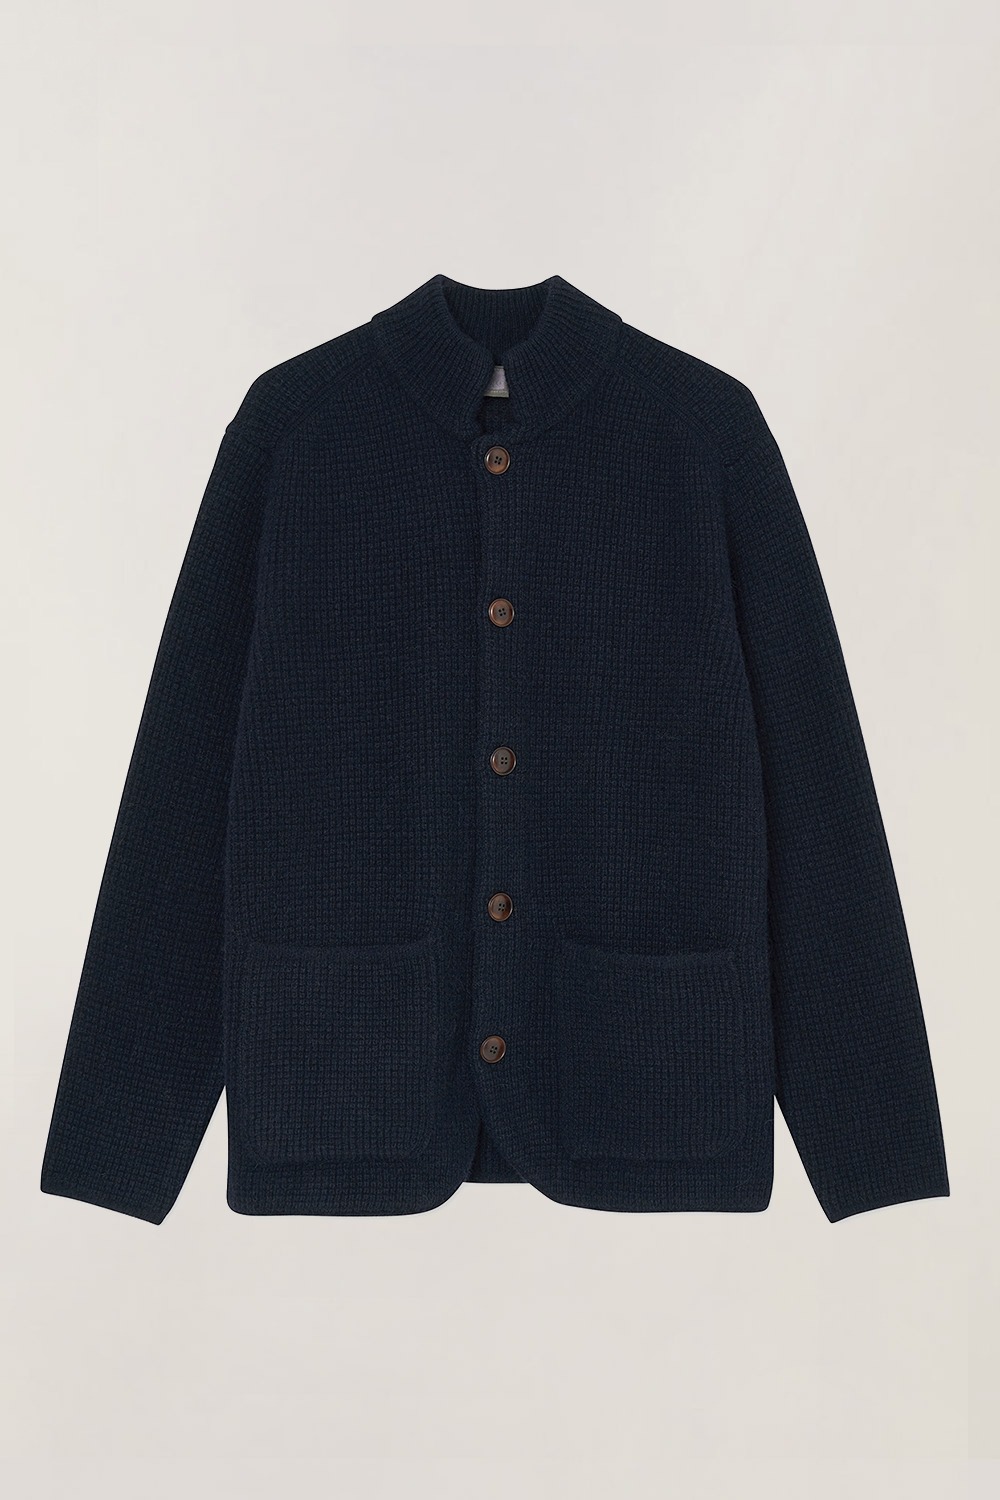 Mandarin Collar knit Jacket_Navy